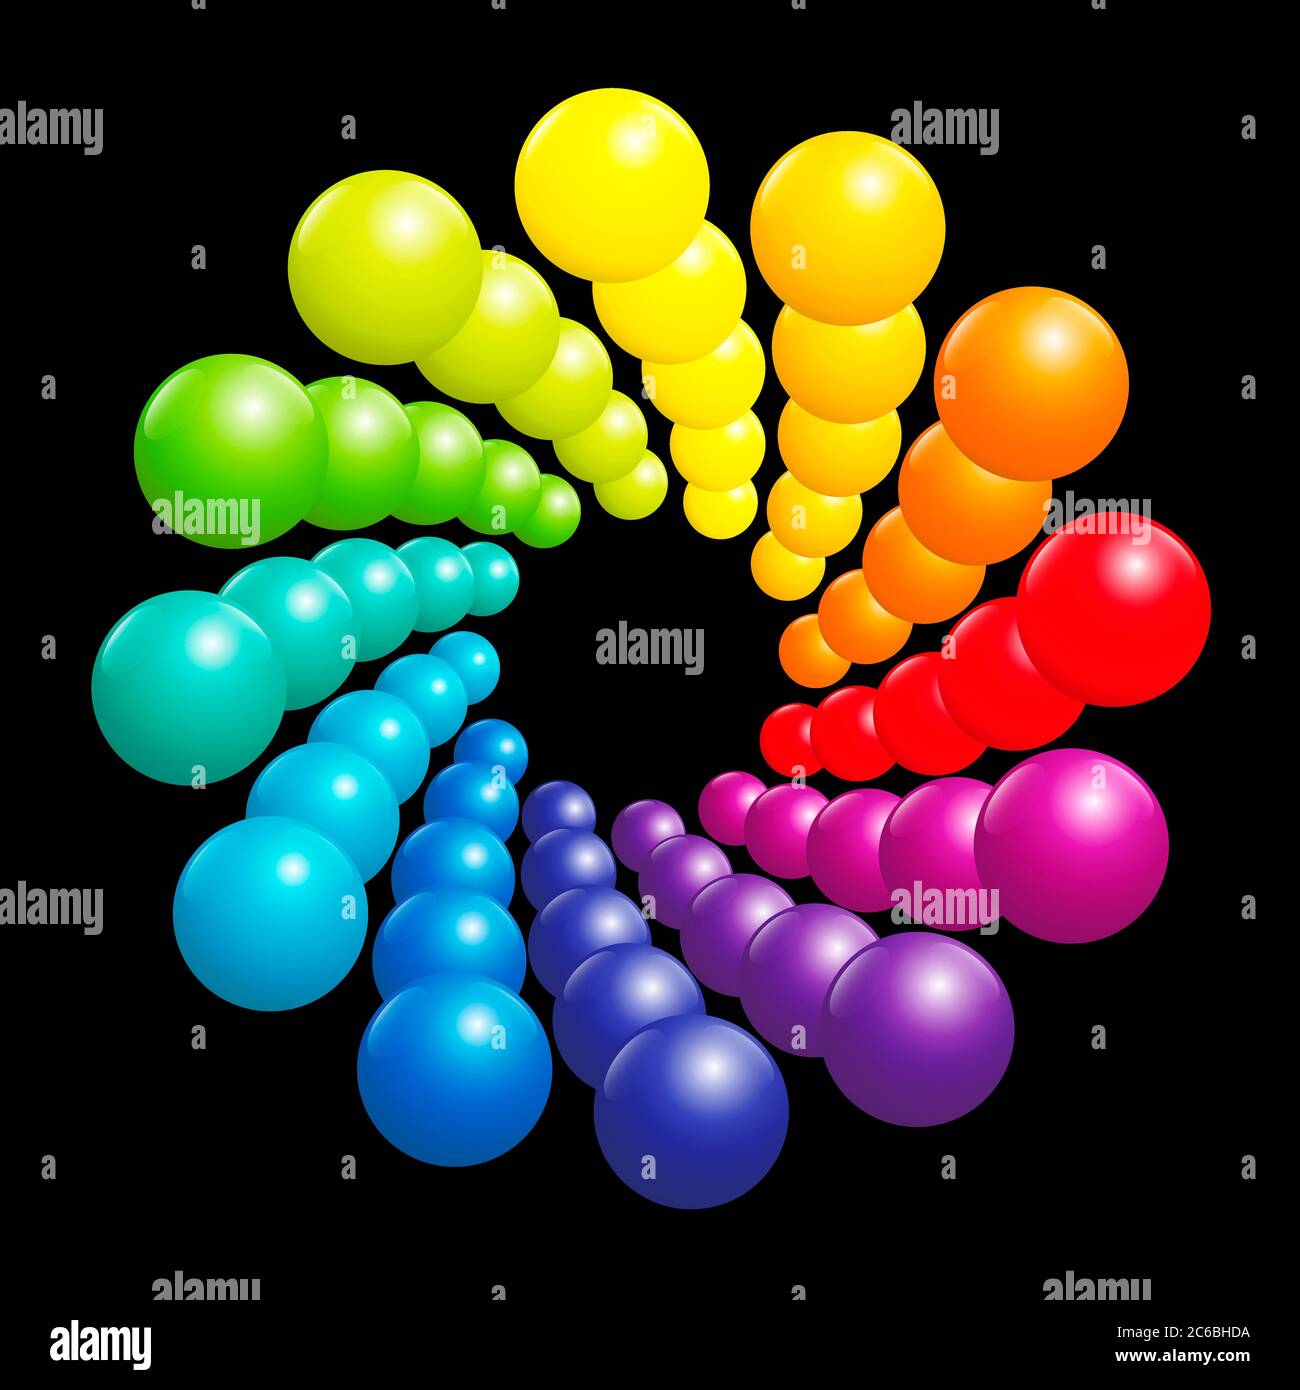 Patrón espiral de colores, espectro arco iris muy brillante formado por muchas bolas de color tridimensional - ilustración sobre fondo negro. Foto de stock